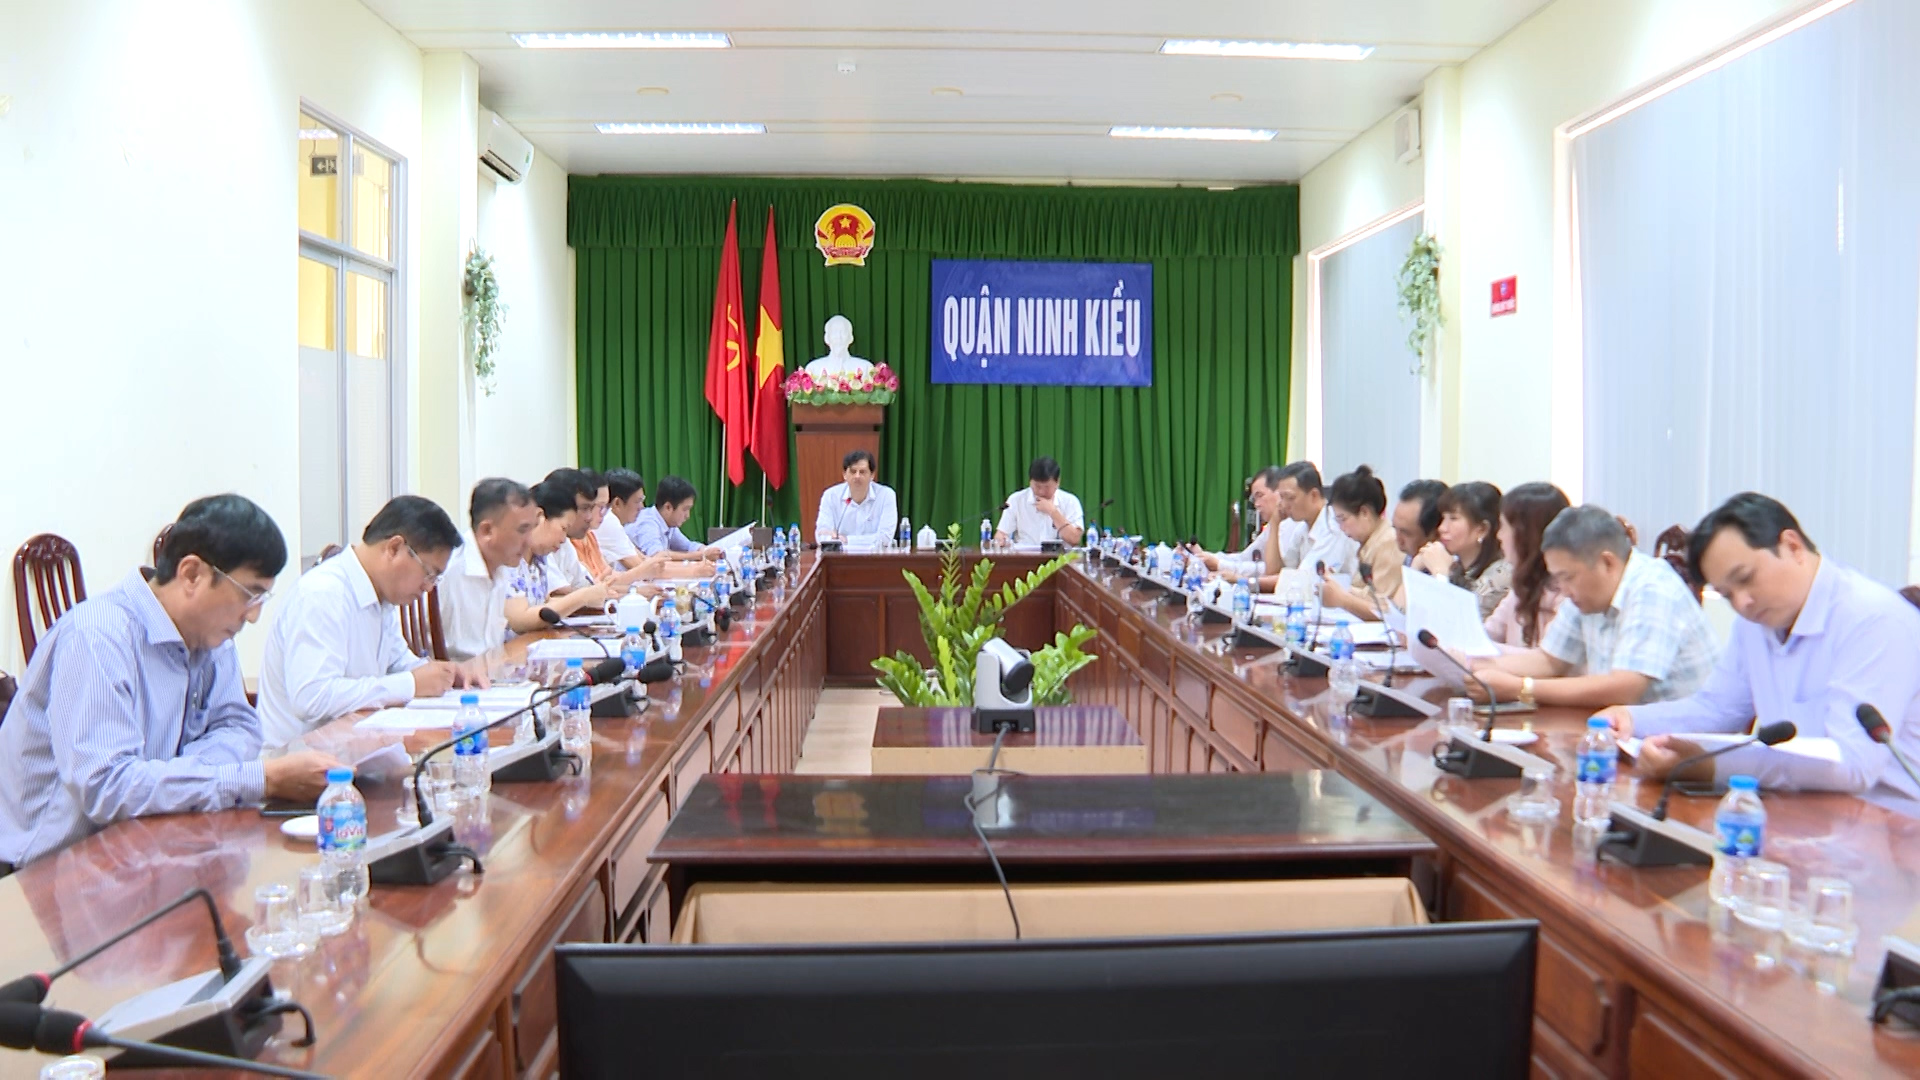 Hình 1: UBND quận Ninh Kiều tổ chức cuộc họp bàn về phương án quản lý, đầu tư khai thác các chợ truyền thống trên địa bàn quận